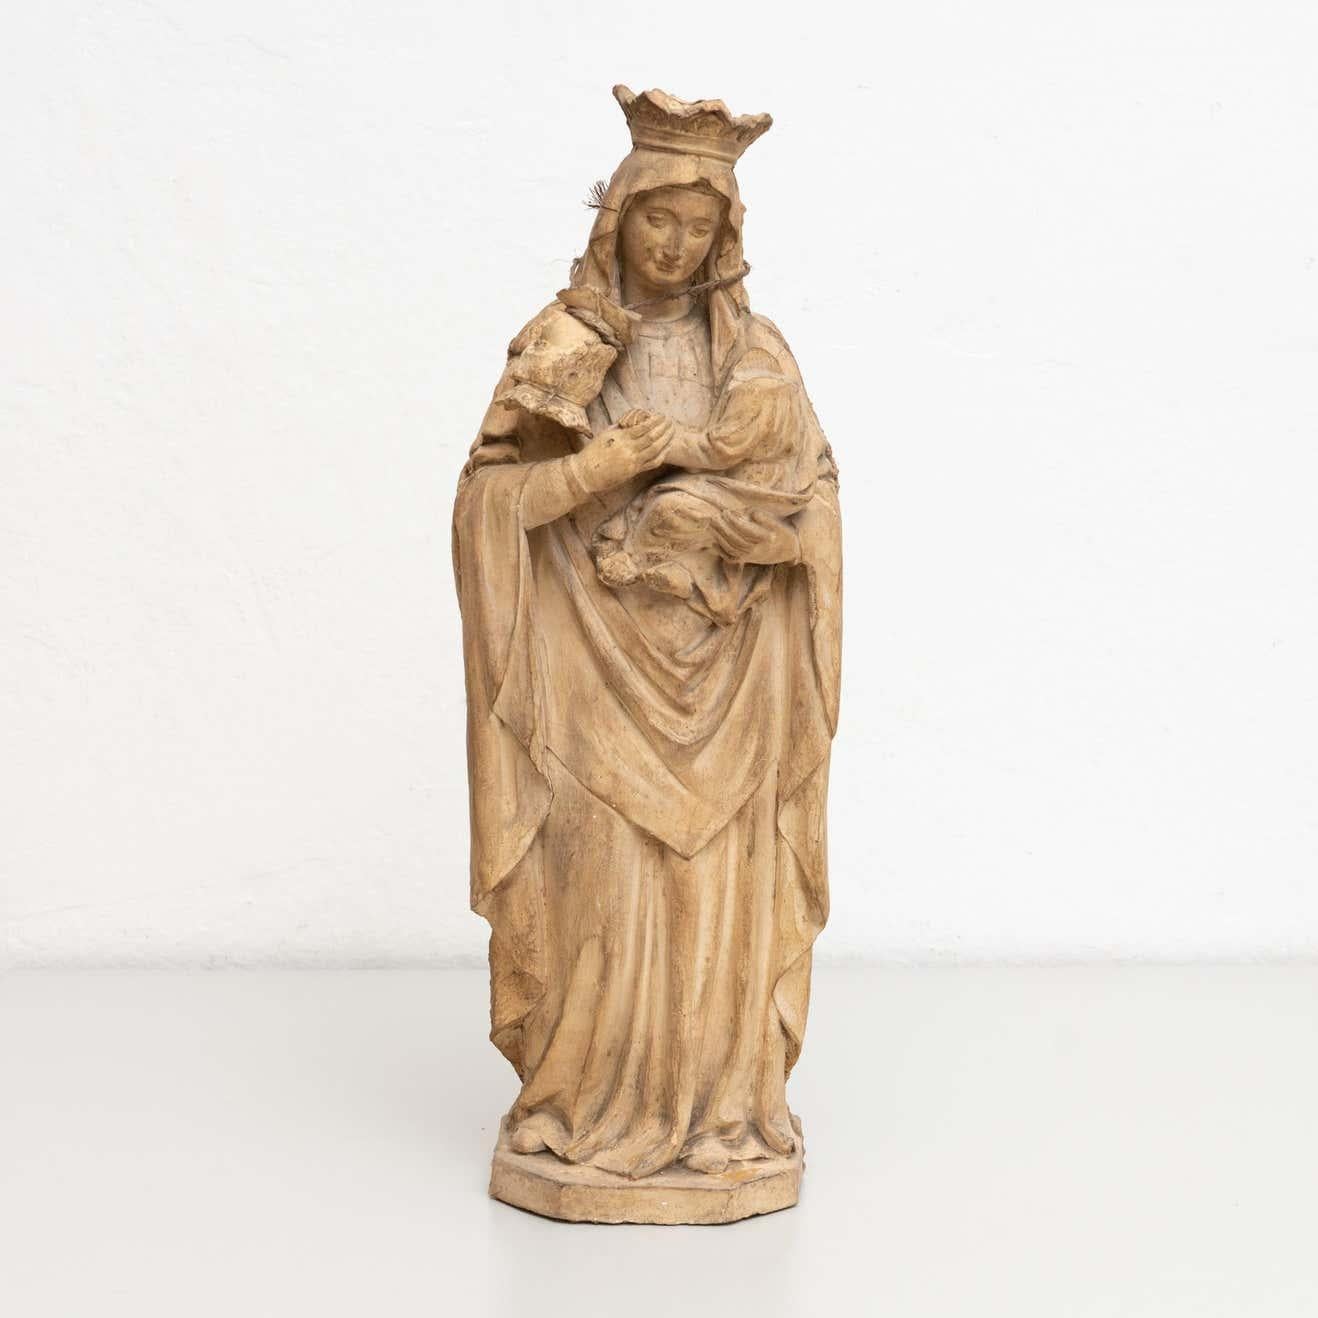 Traditionelle religiöse Gipsfigur einer Jungfrau.

Hergestellt in einem traditionellen katalanischen Atelier in Olot, Spanien, um 1950.

Originaler Zustand mit geringen alters- und gebrauchsbedingten Abnutzungserscheinungen, der eine schöne Patina